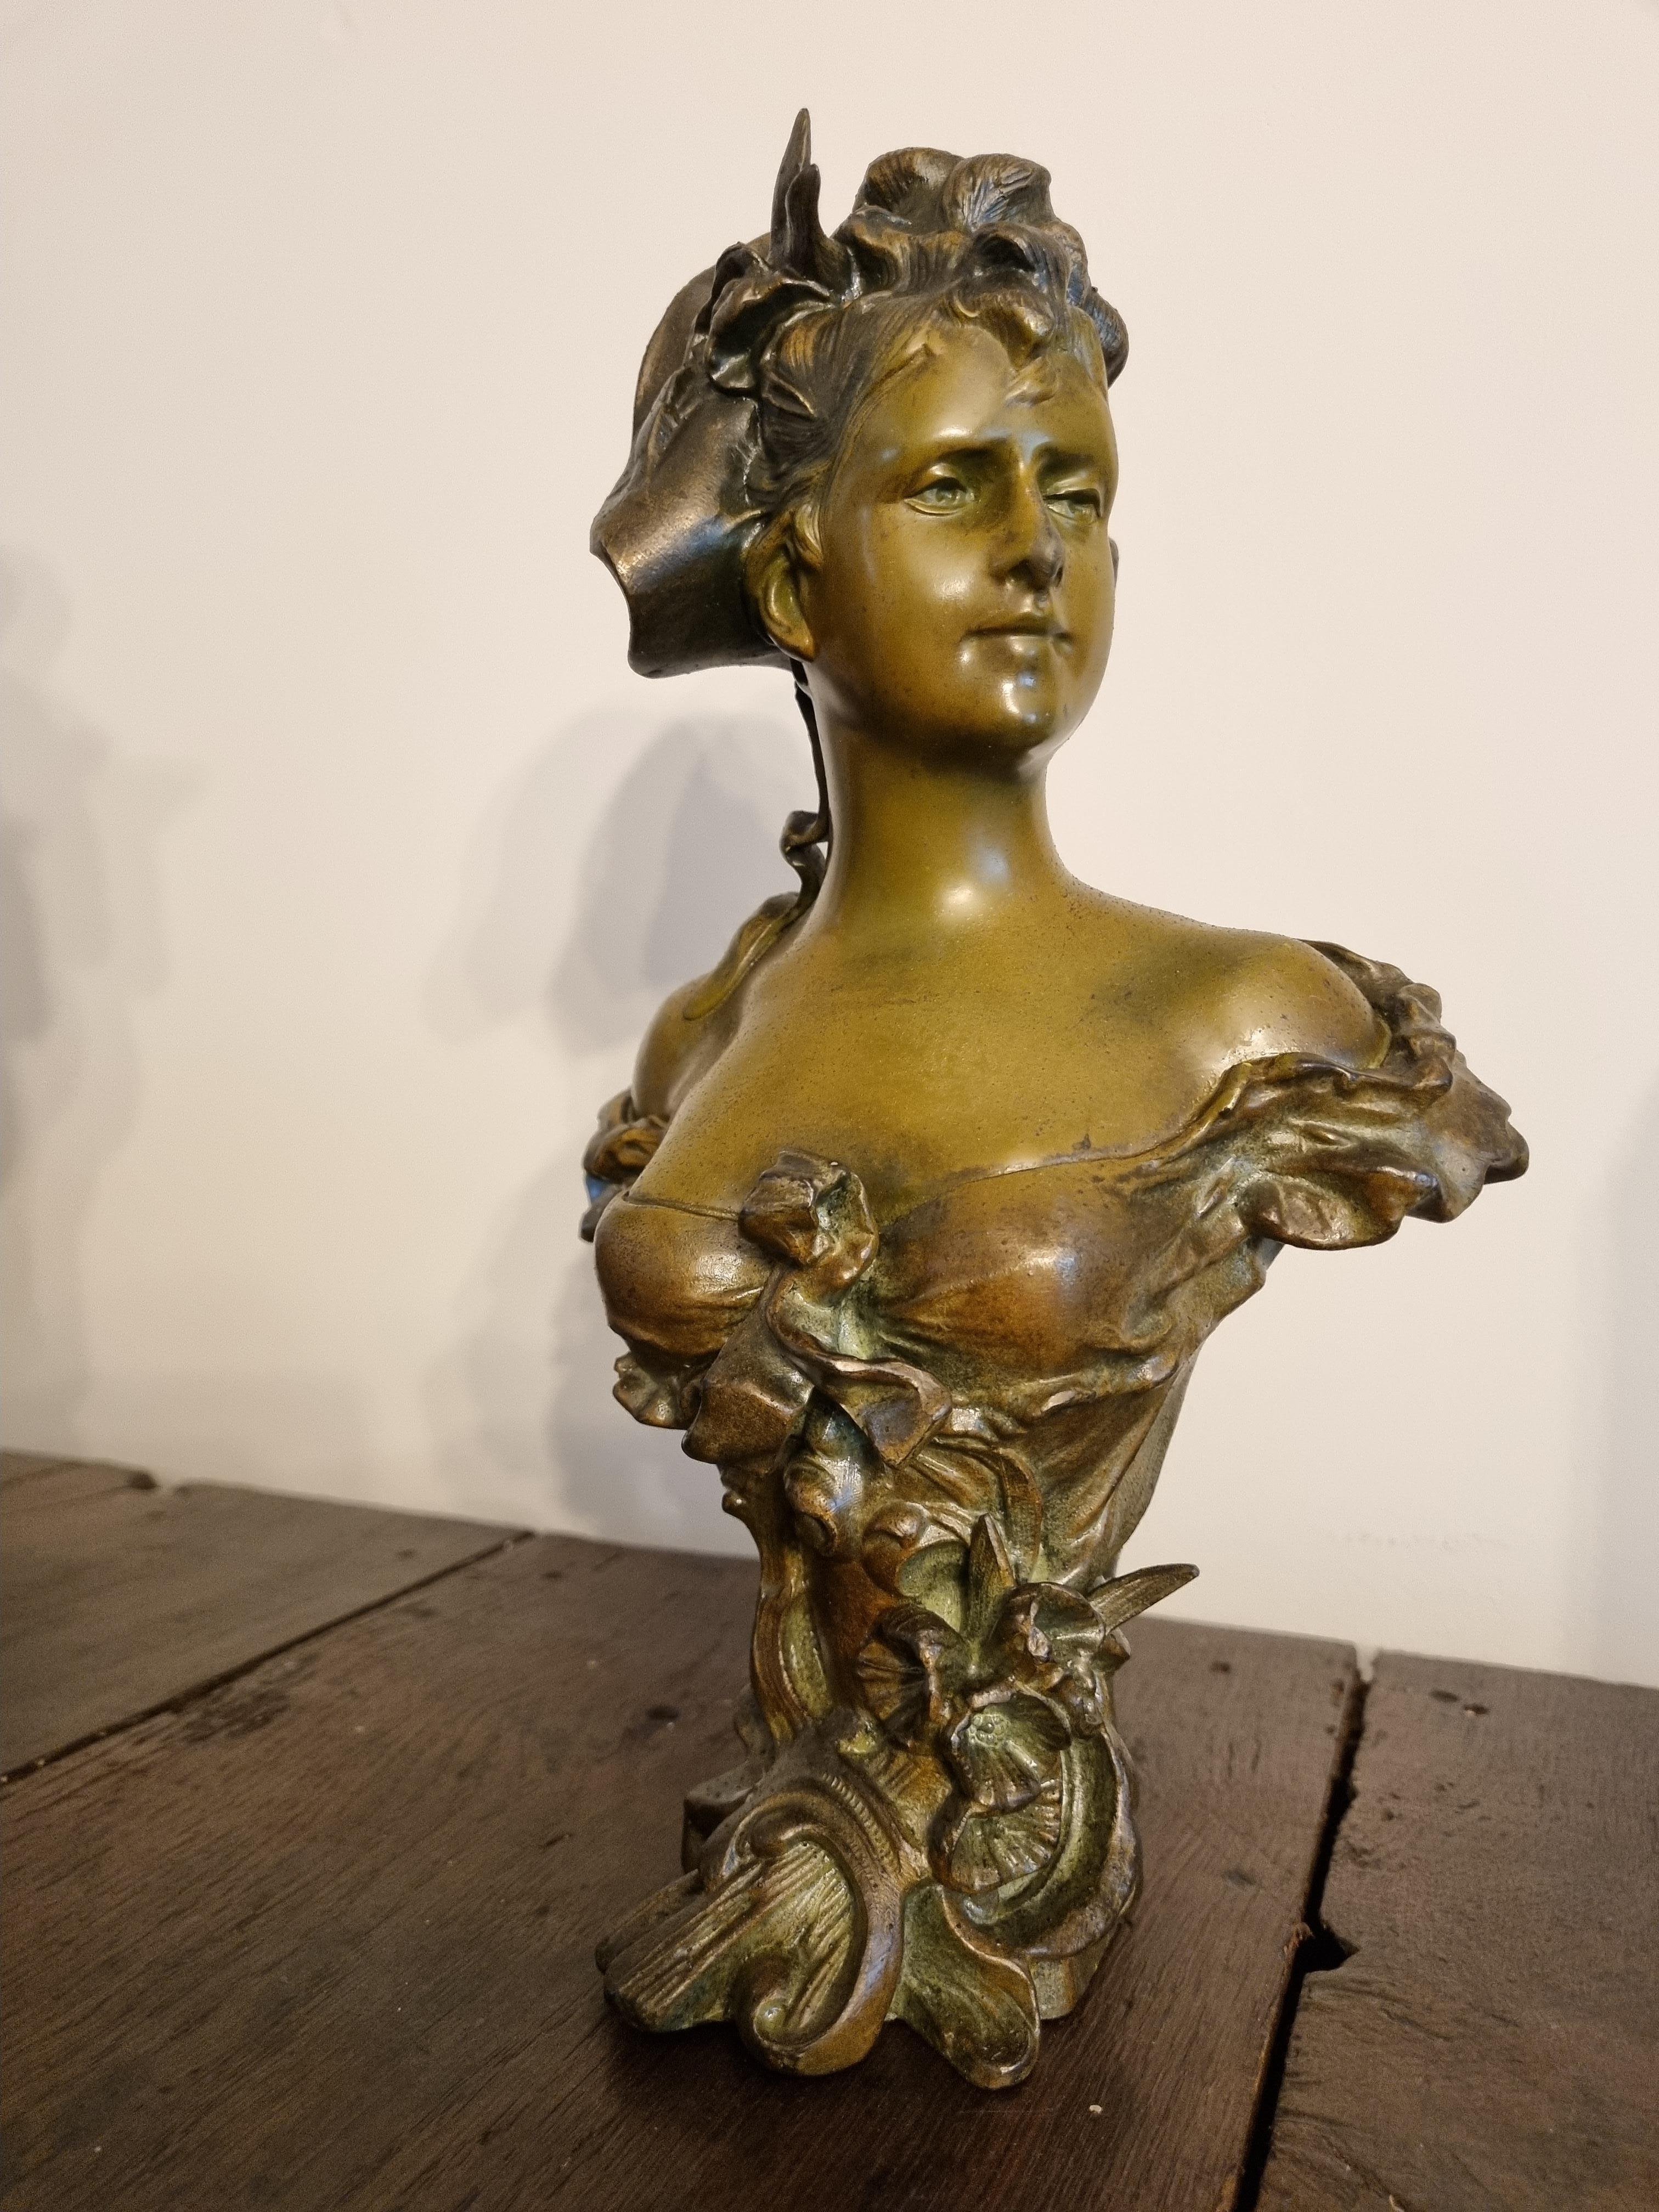 Bronzebüste im Jugendstil, um 1900 

Alfred Jean Foretay, 1861-1944, 

Ein bekannter Künstler des späten 19. und frühen 20. Jahrhunderts. 

Wunderschöne, detailreiche Büste einer Dame des Jugendstils aus weißer Bronze, kalt bemalt.

Diese Skulptur